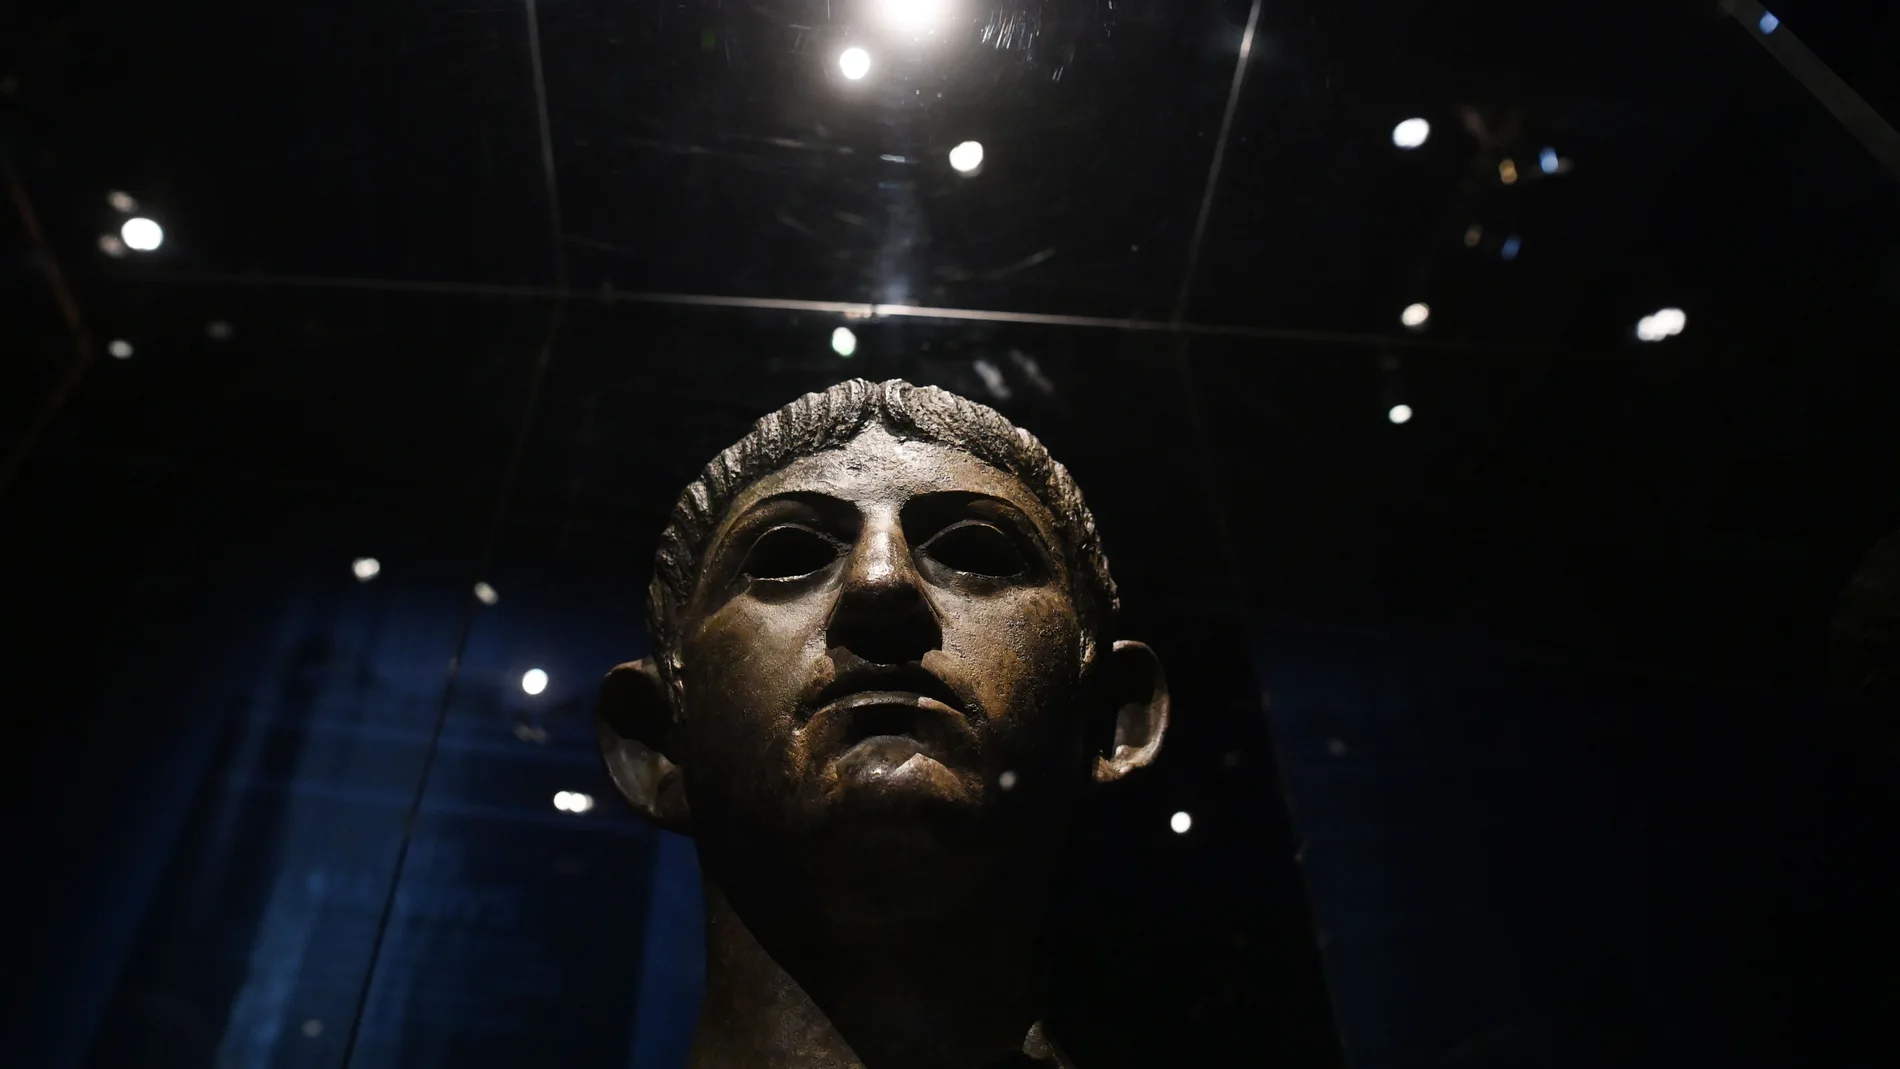 Busto de bronce del emperador romano Nerón, expuesto en el British Museum de Londres